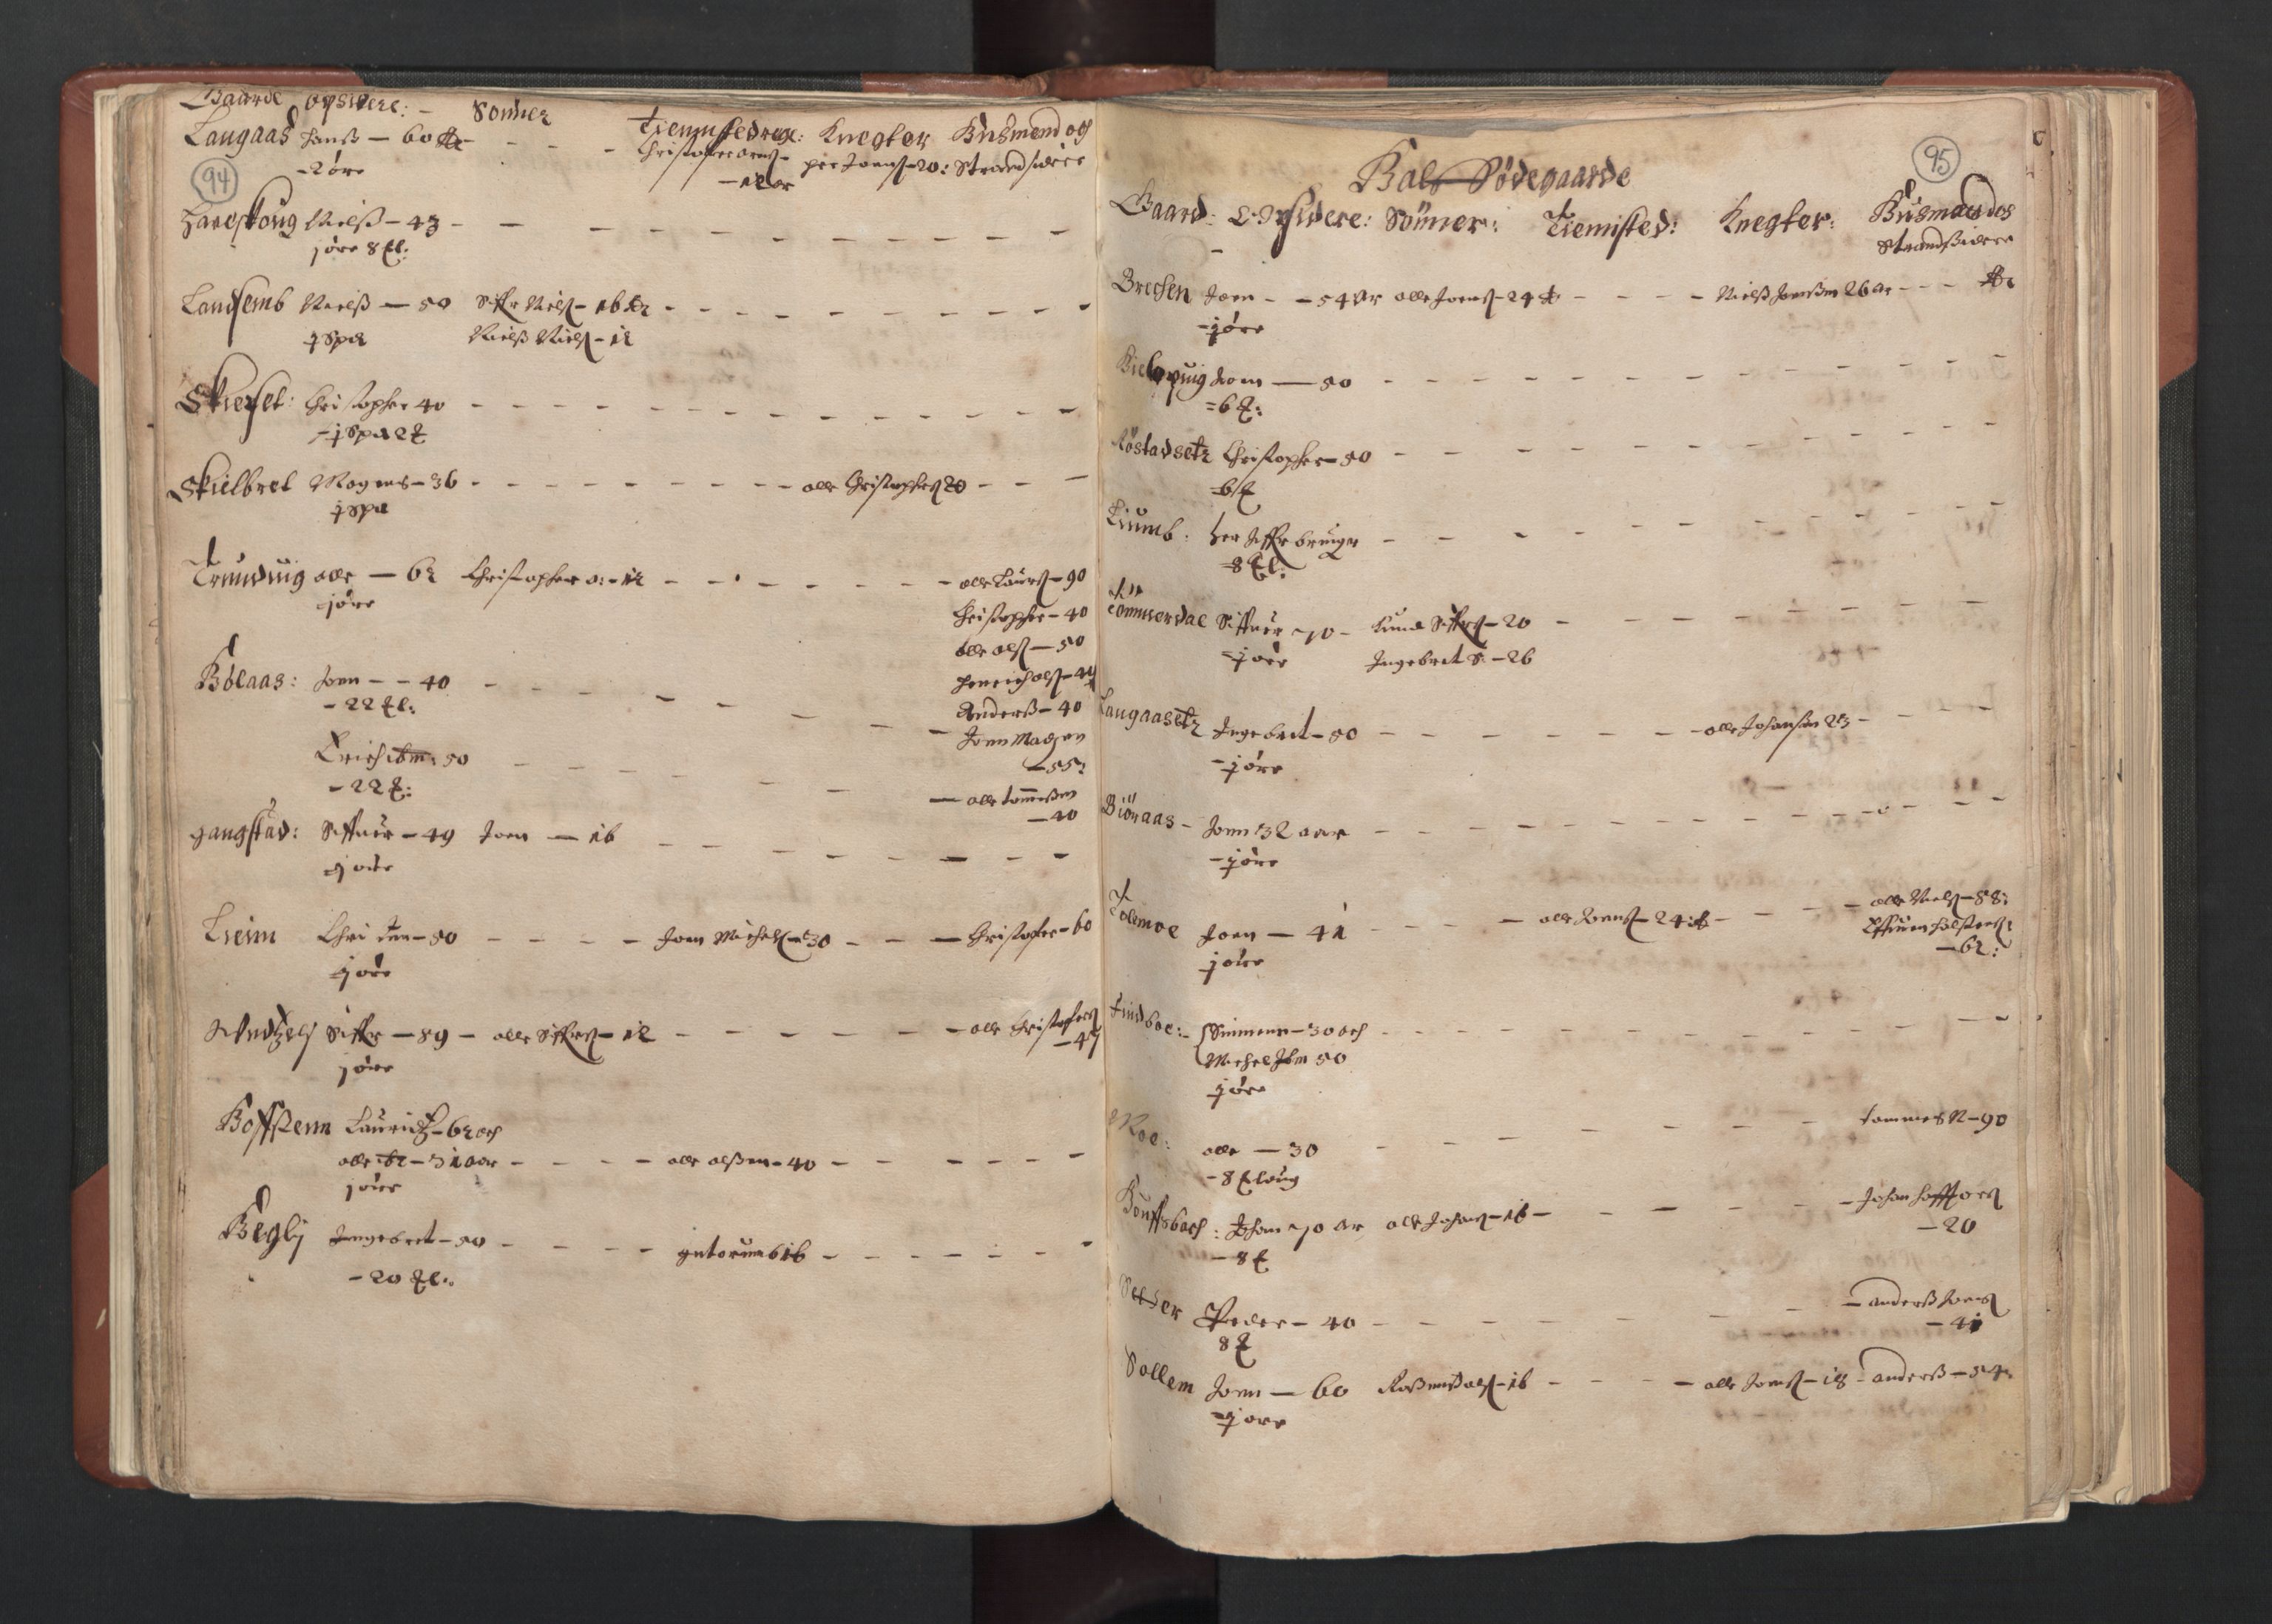 RA, Fogdenes og sorenskrivernes manntall 1664-1666, nr. 19: Fosen fogderi, Inderøy fogderi, Selbu fogderi, Namdal fogderi og Stjørdal fogderi, 1664-1665, s. 94-95